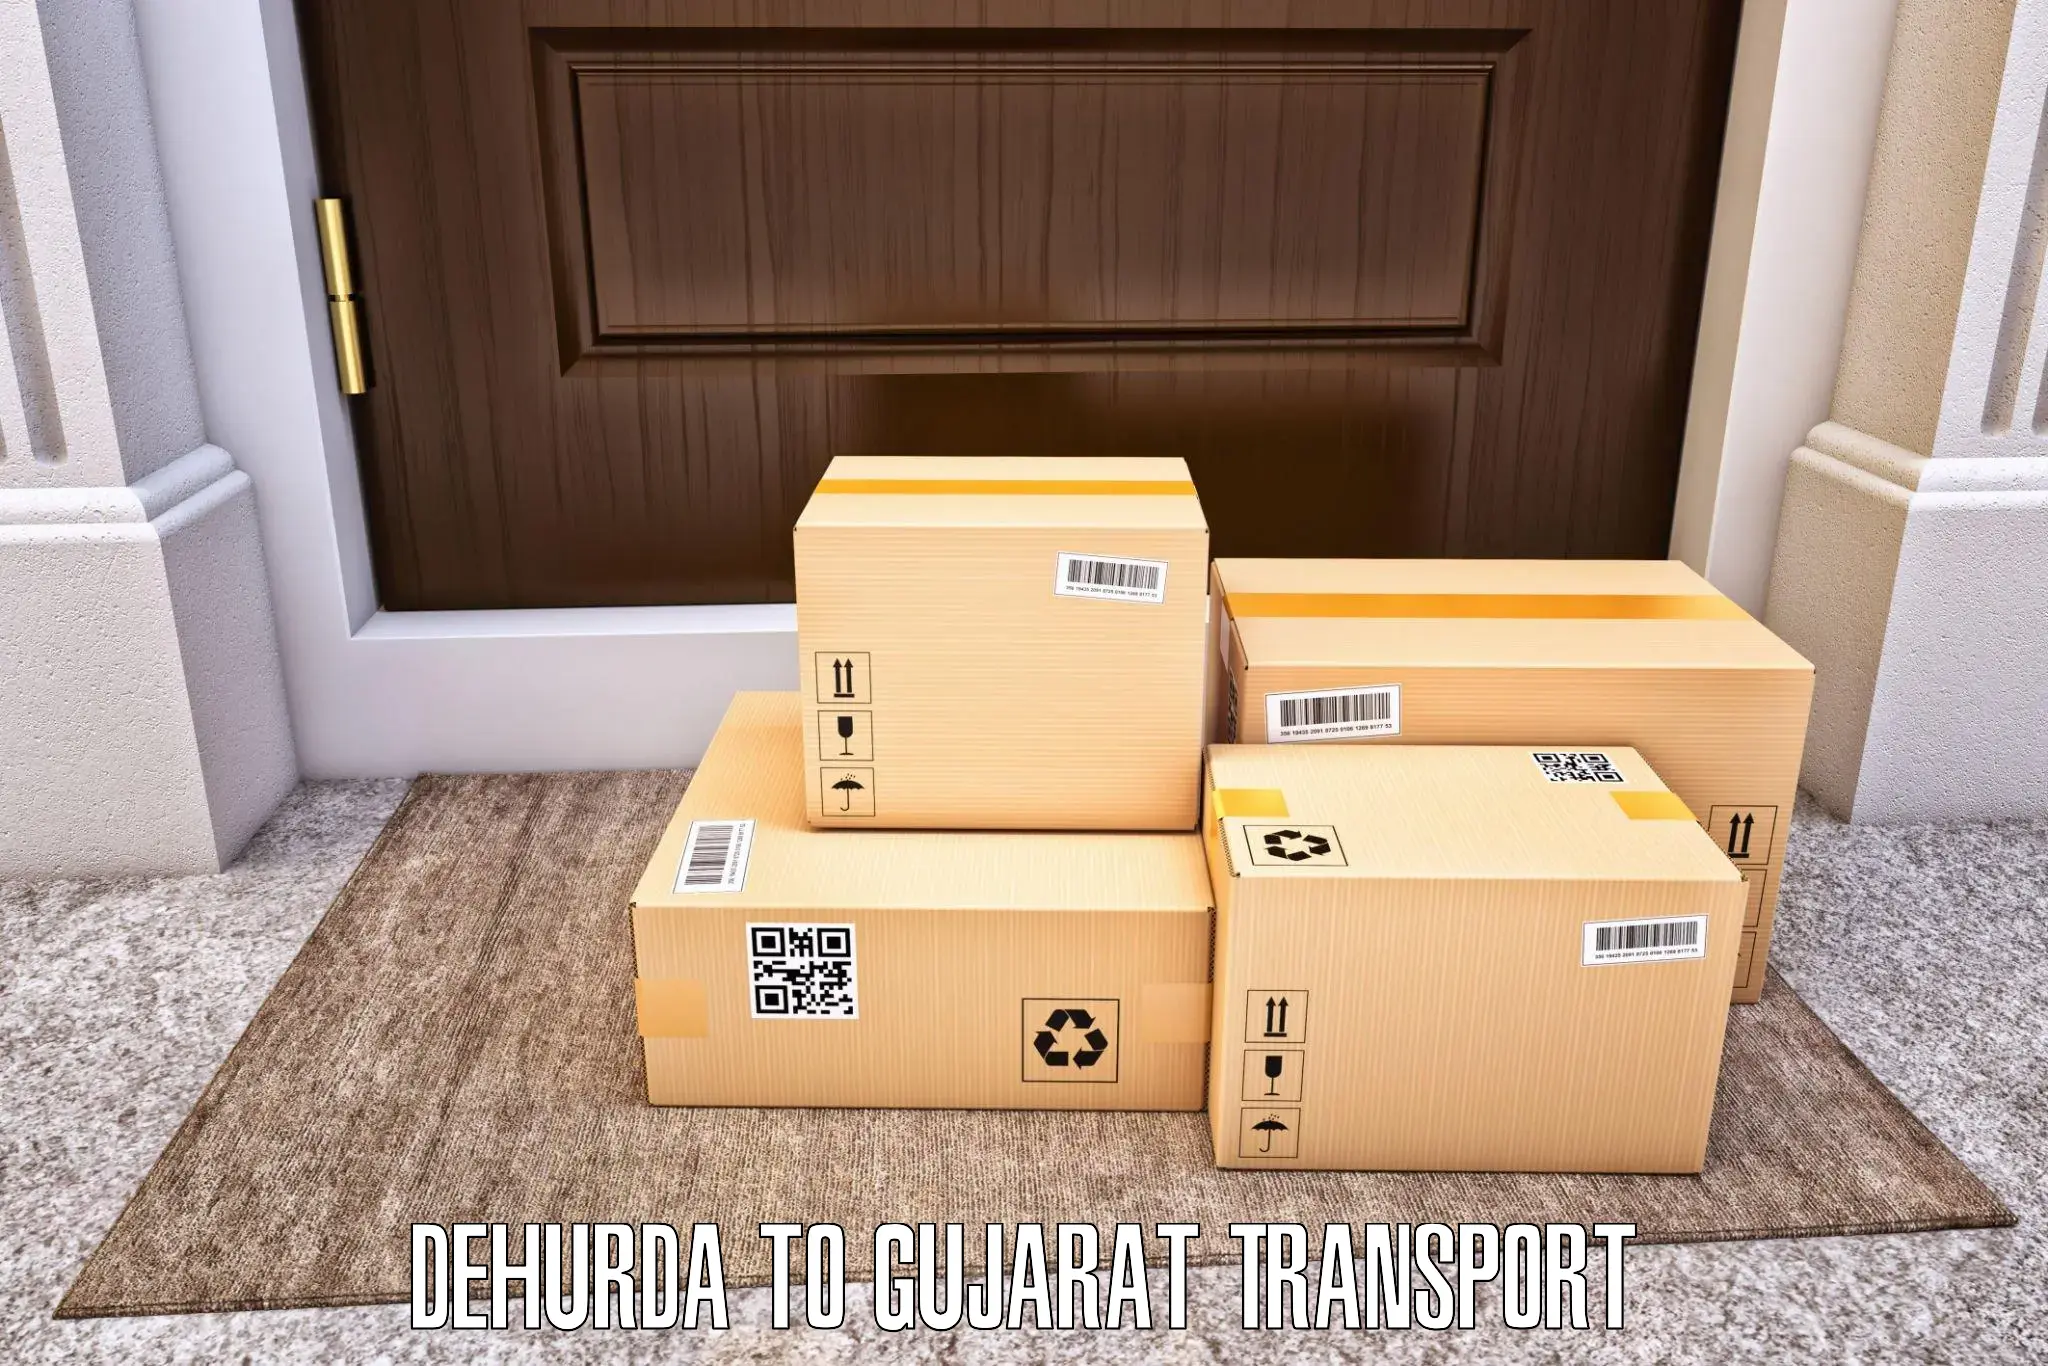 Commercial transport service Dehurda to Nadiad